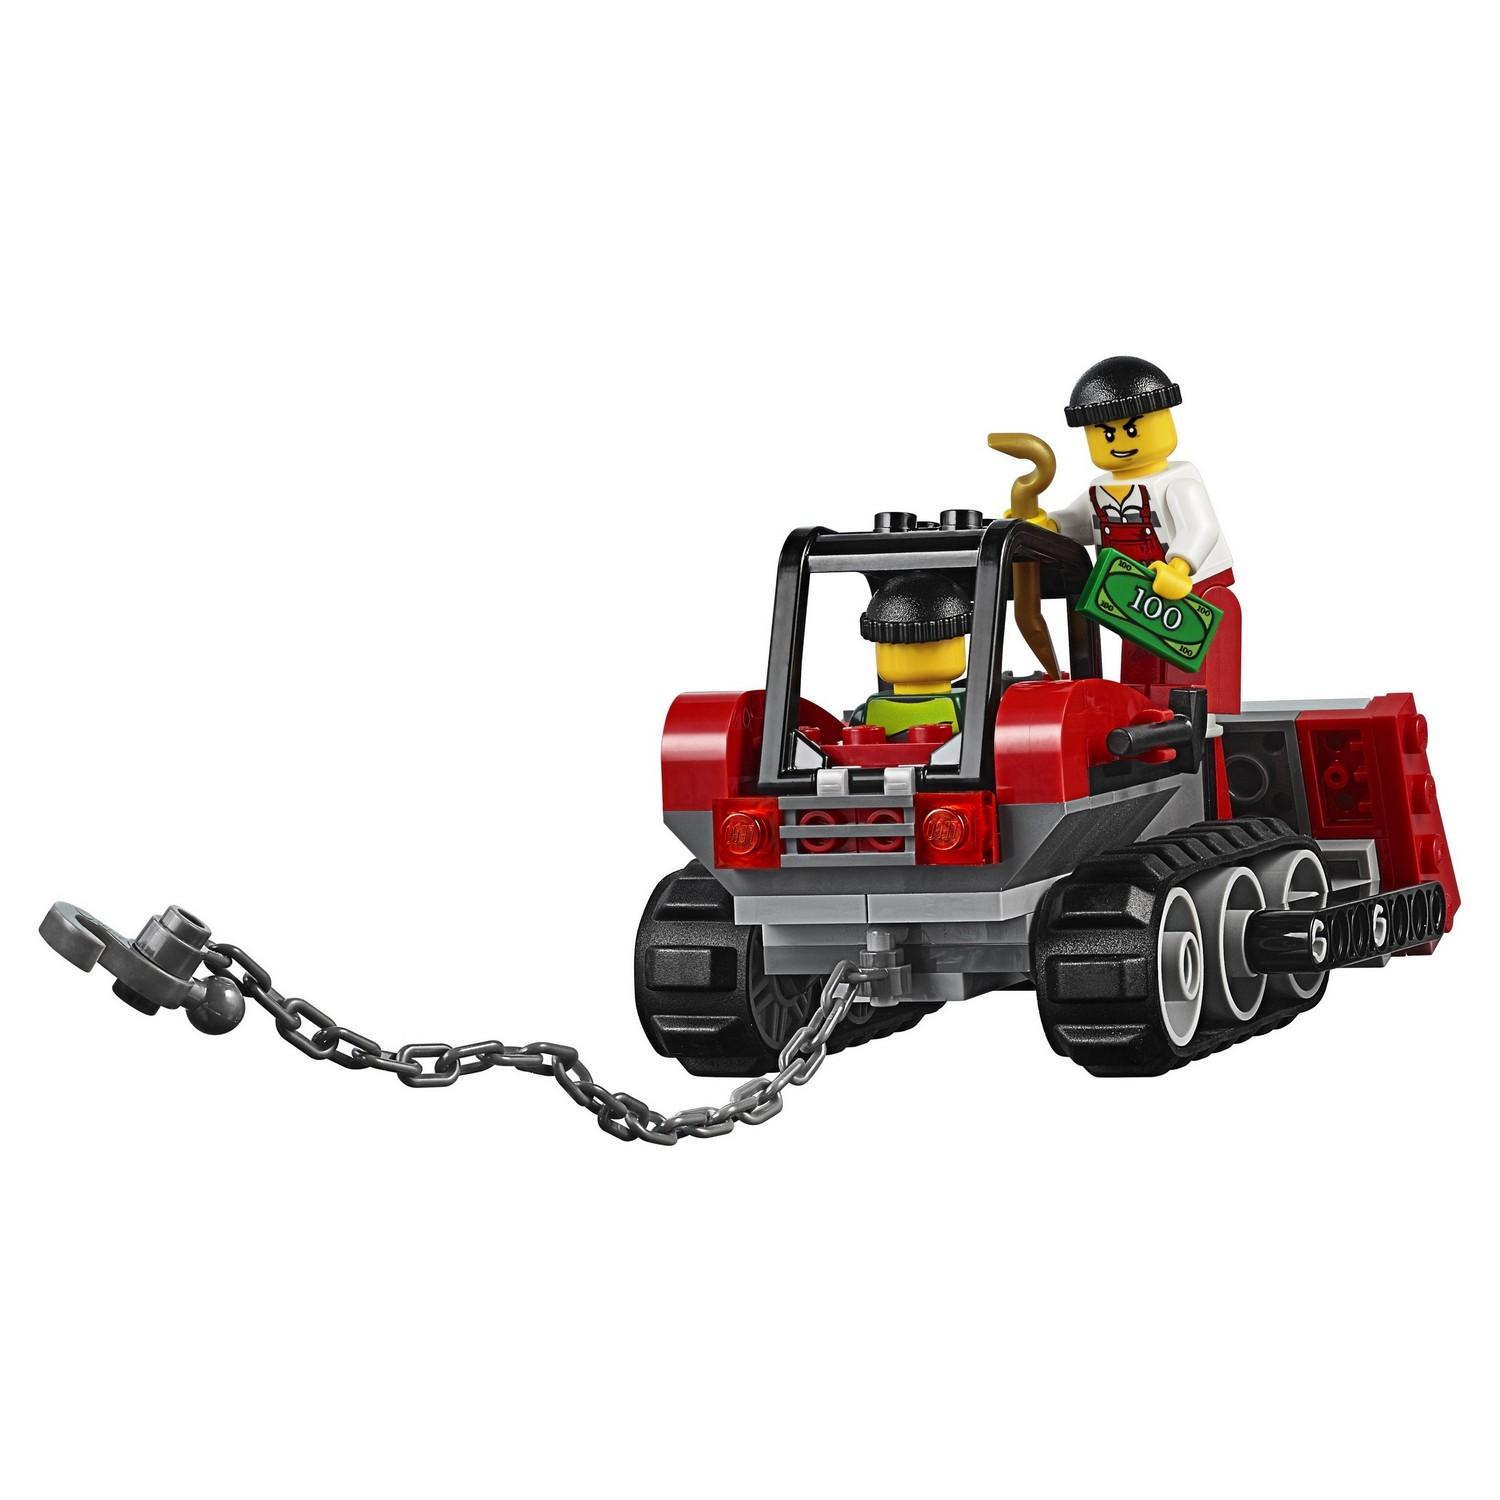 Lego City 60140 Ограбление на бульдозере